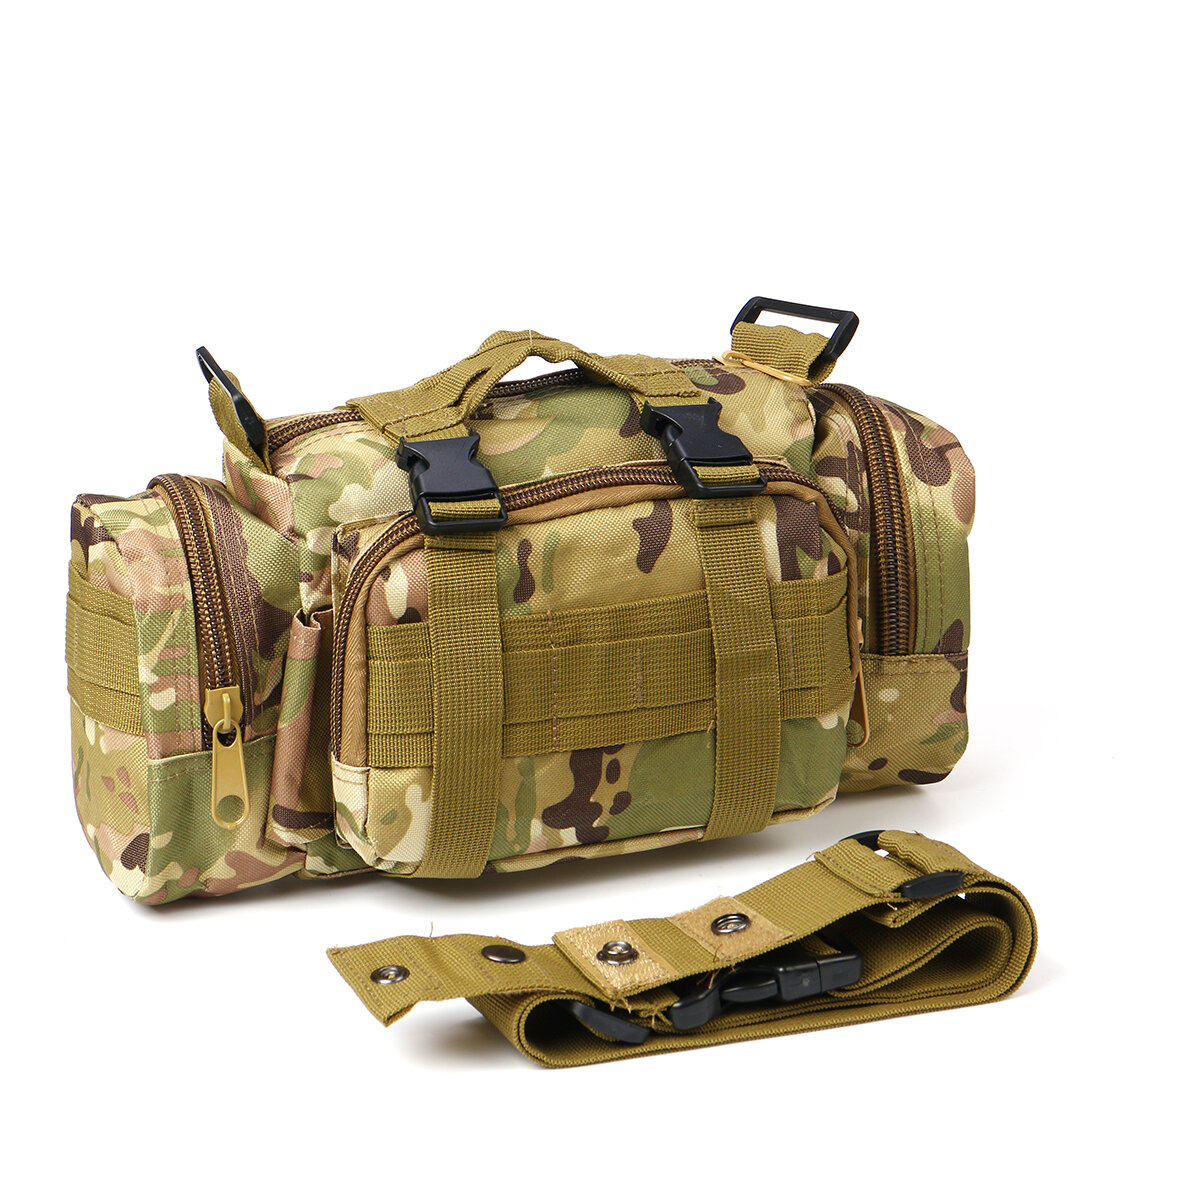 600D Oxford sac de taille en tissu poche tactique étanche sac à bandoulière sac à main Camping en plein air chasse